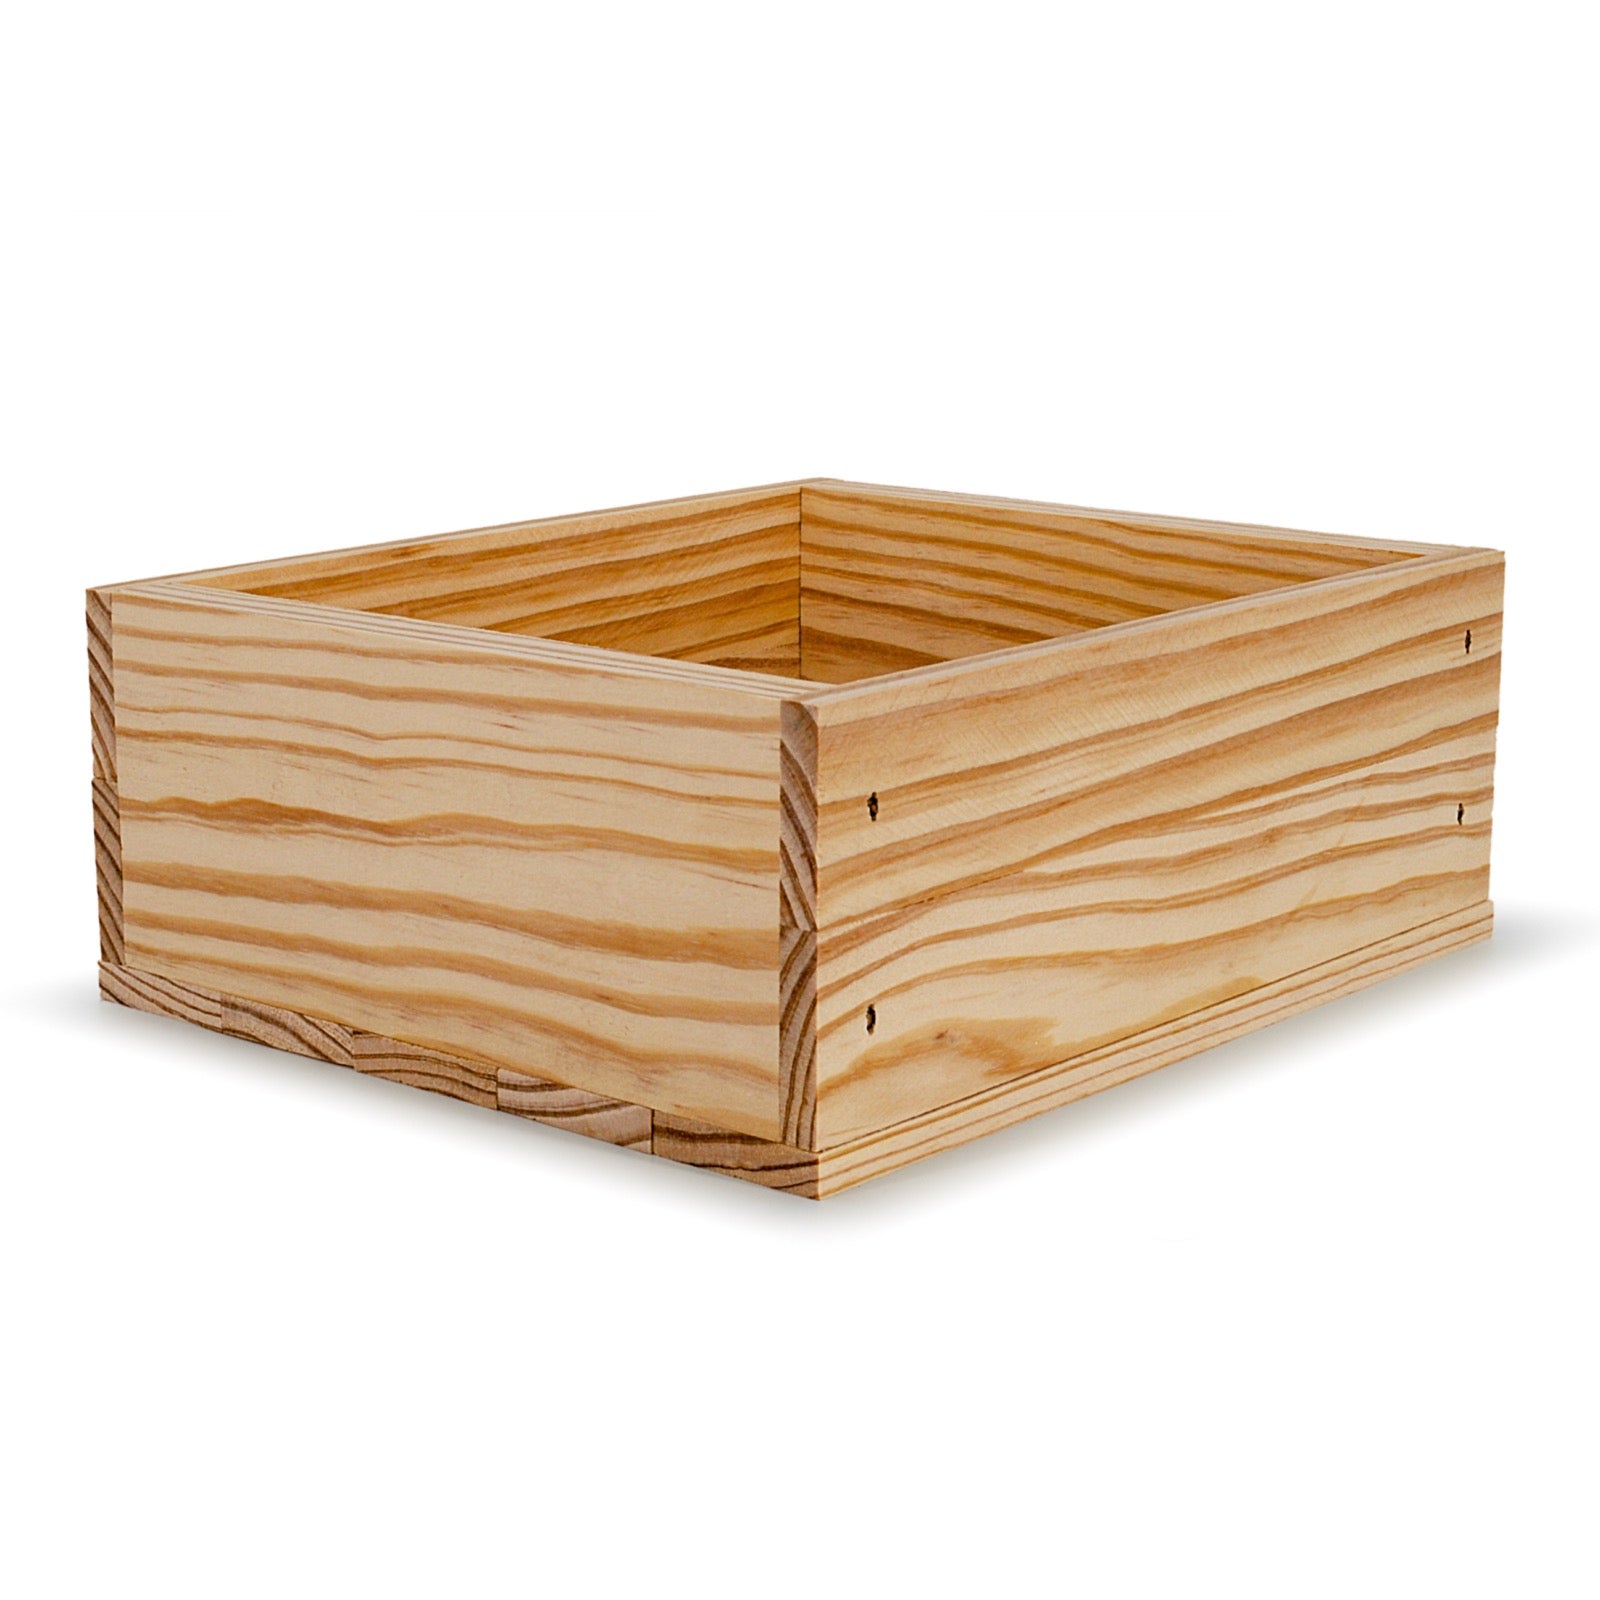 Small wooden crate 9x8x3.5, 6-BX-9-8-3.5-NX-NW-NL, 12-BX-9-8-3.5-NX-NW-NL, 24-BX-9-8-3.5-NX-NW-NL, 48-BX-9-8-3.5-NX-NW-NL, 96-BX-9-8-3.5-NX-NW-NL